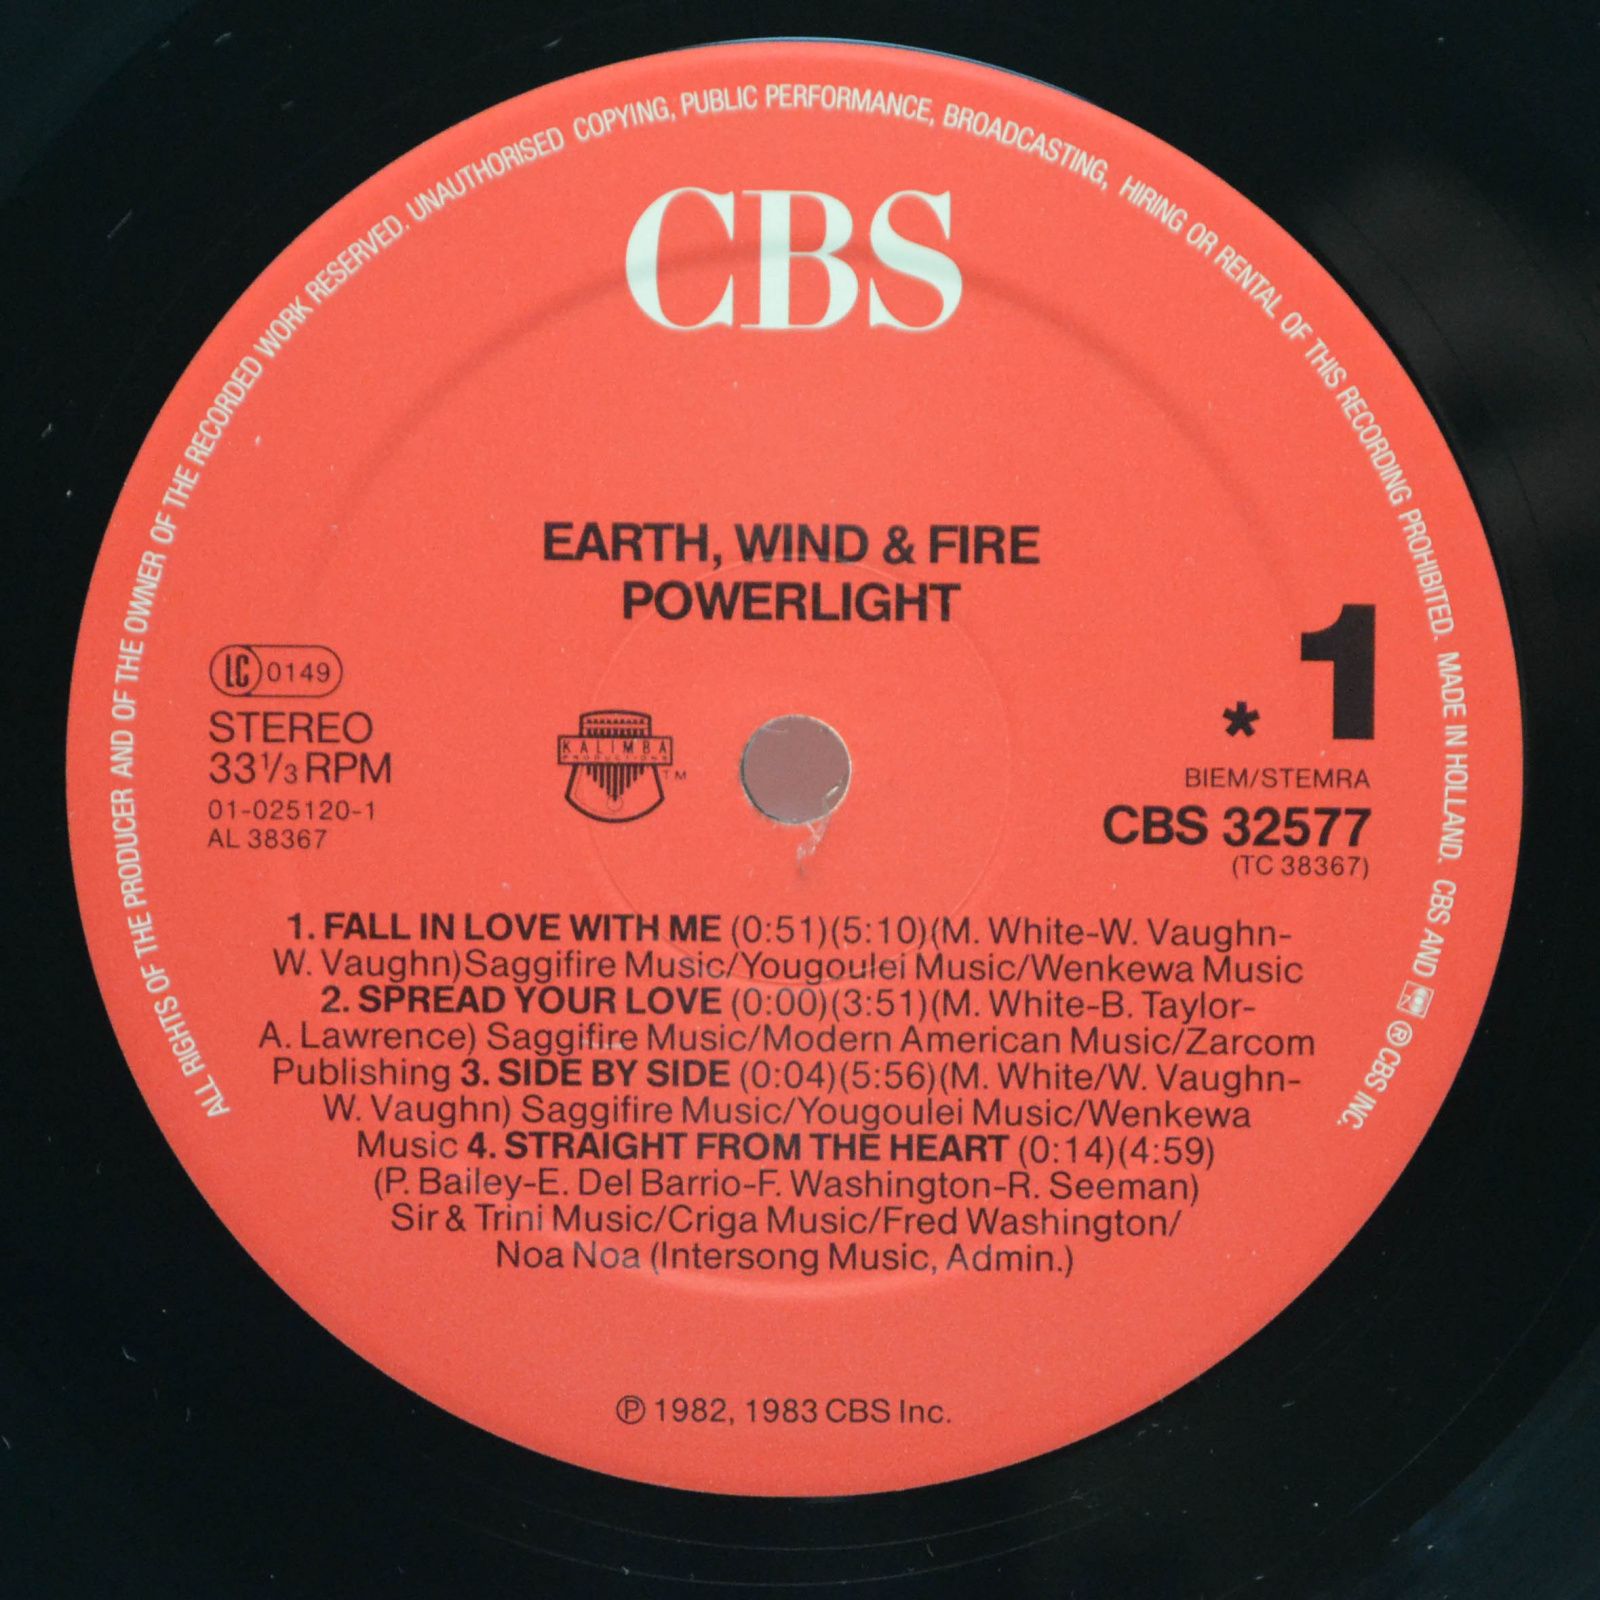 Earth, Wind & Fire — Powerlight, 1983